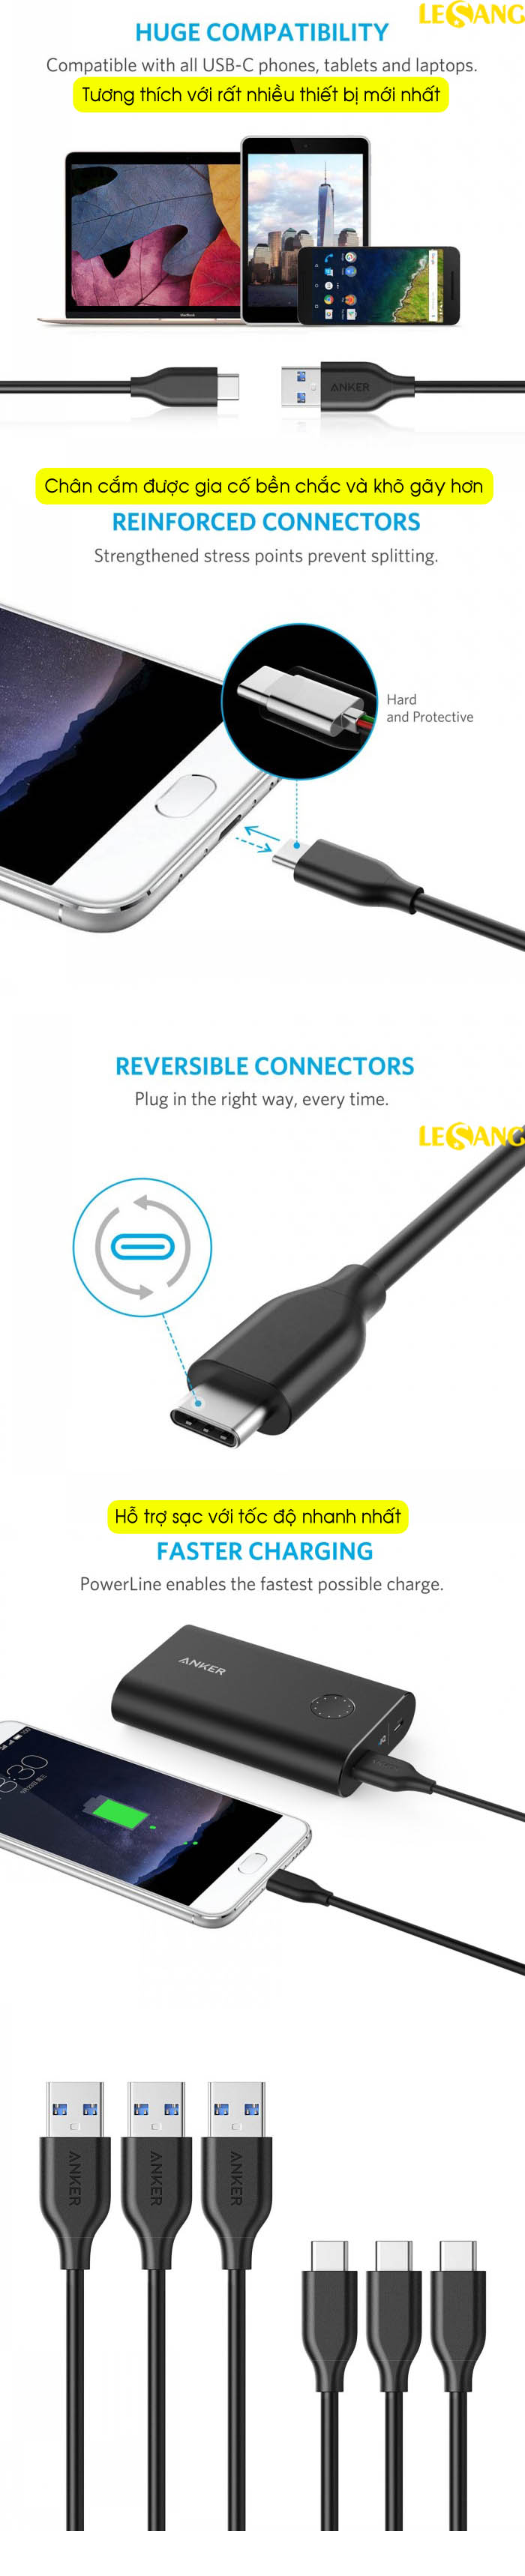 Dây cáp sạc Anker PowerLine USB 3.0 ra USB-C - Dài 0.9m - A8163 4